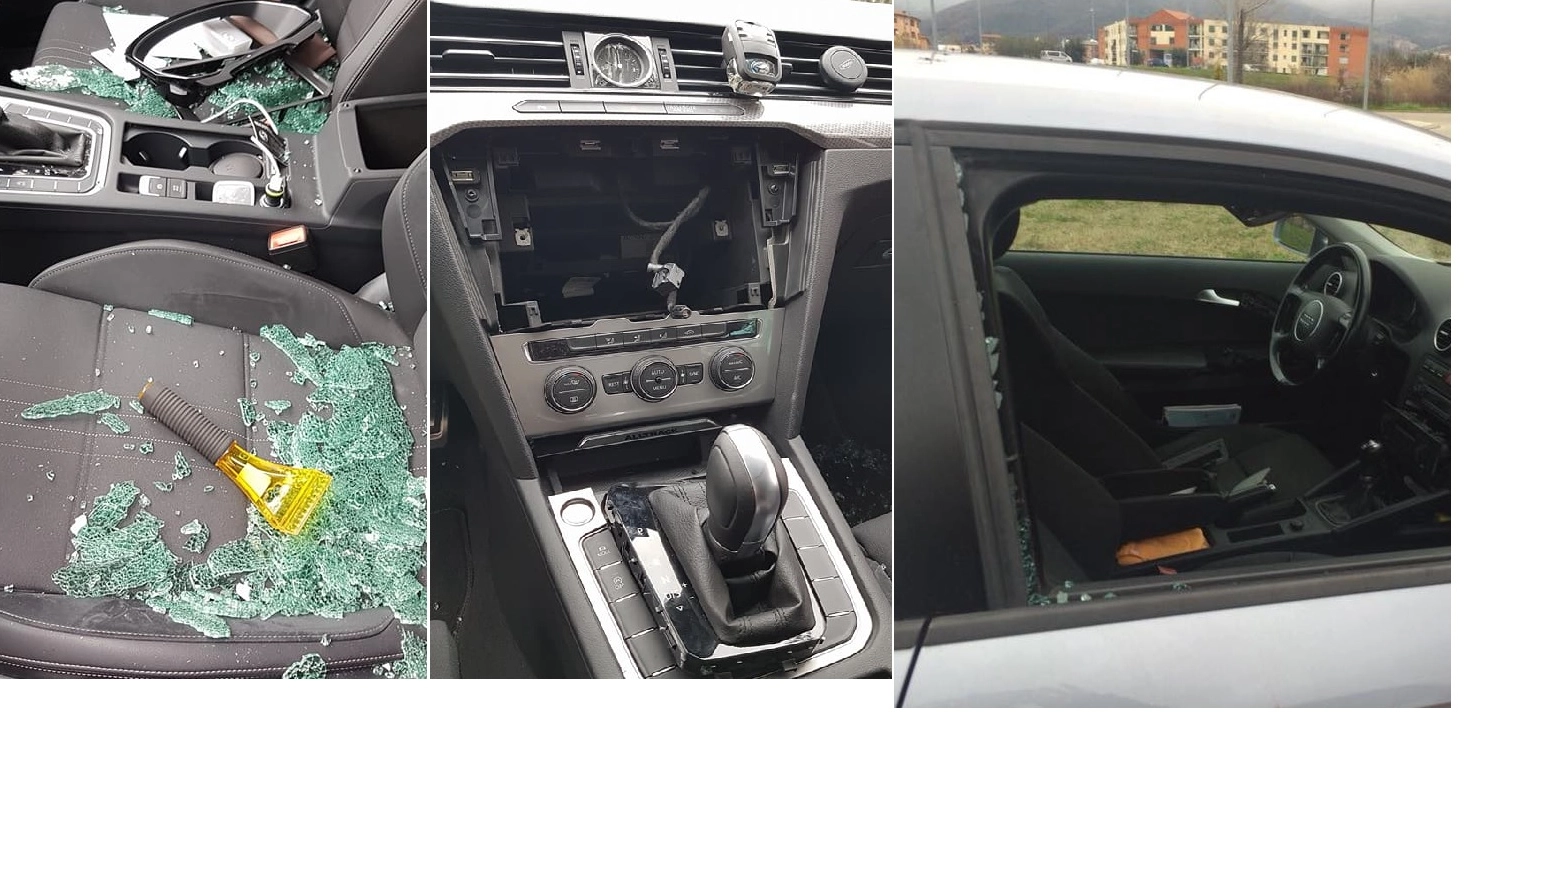 Tre foto dei blitz dei ladri nelle auto, gravi danni (Fb "Abitanti di Sesto Fiorentino")